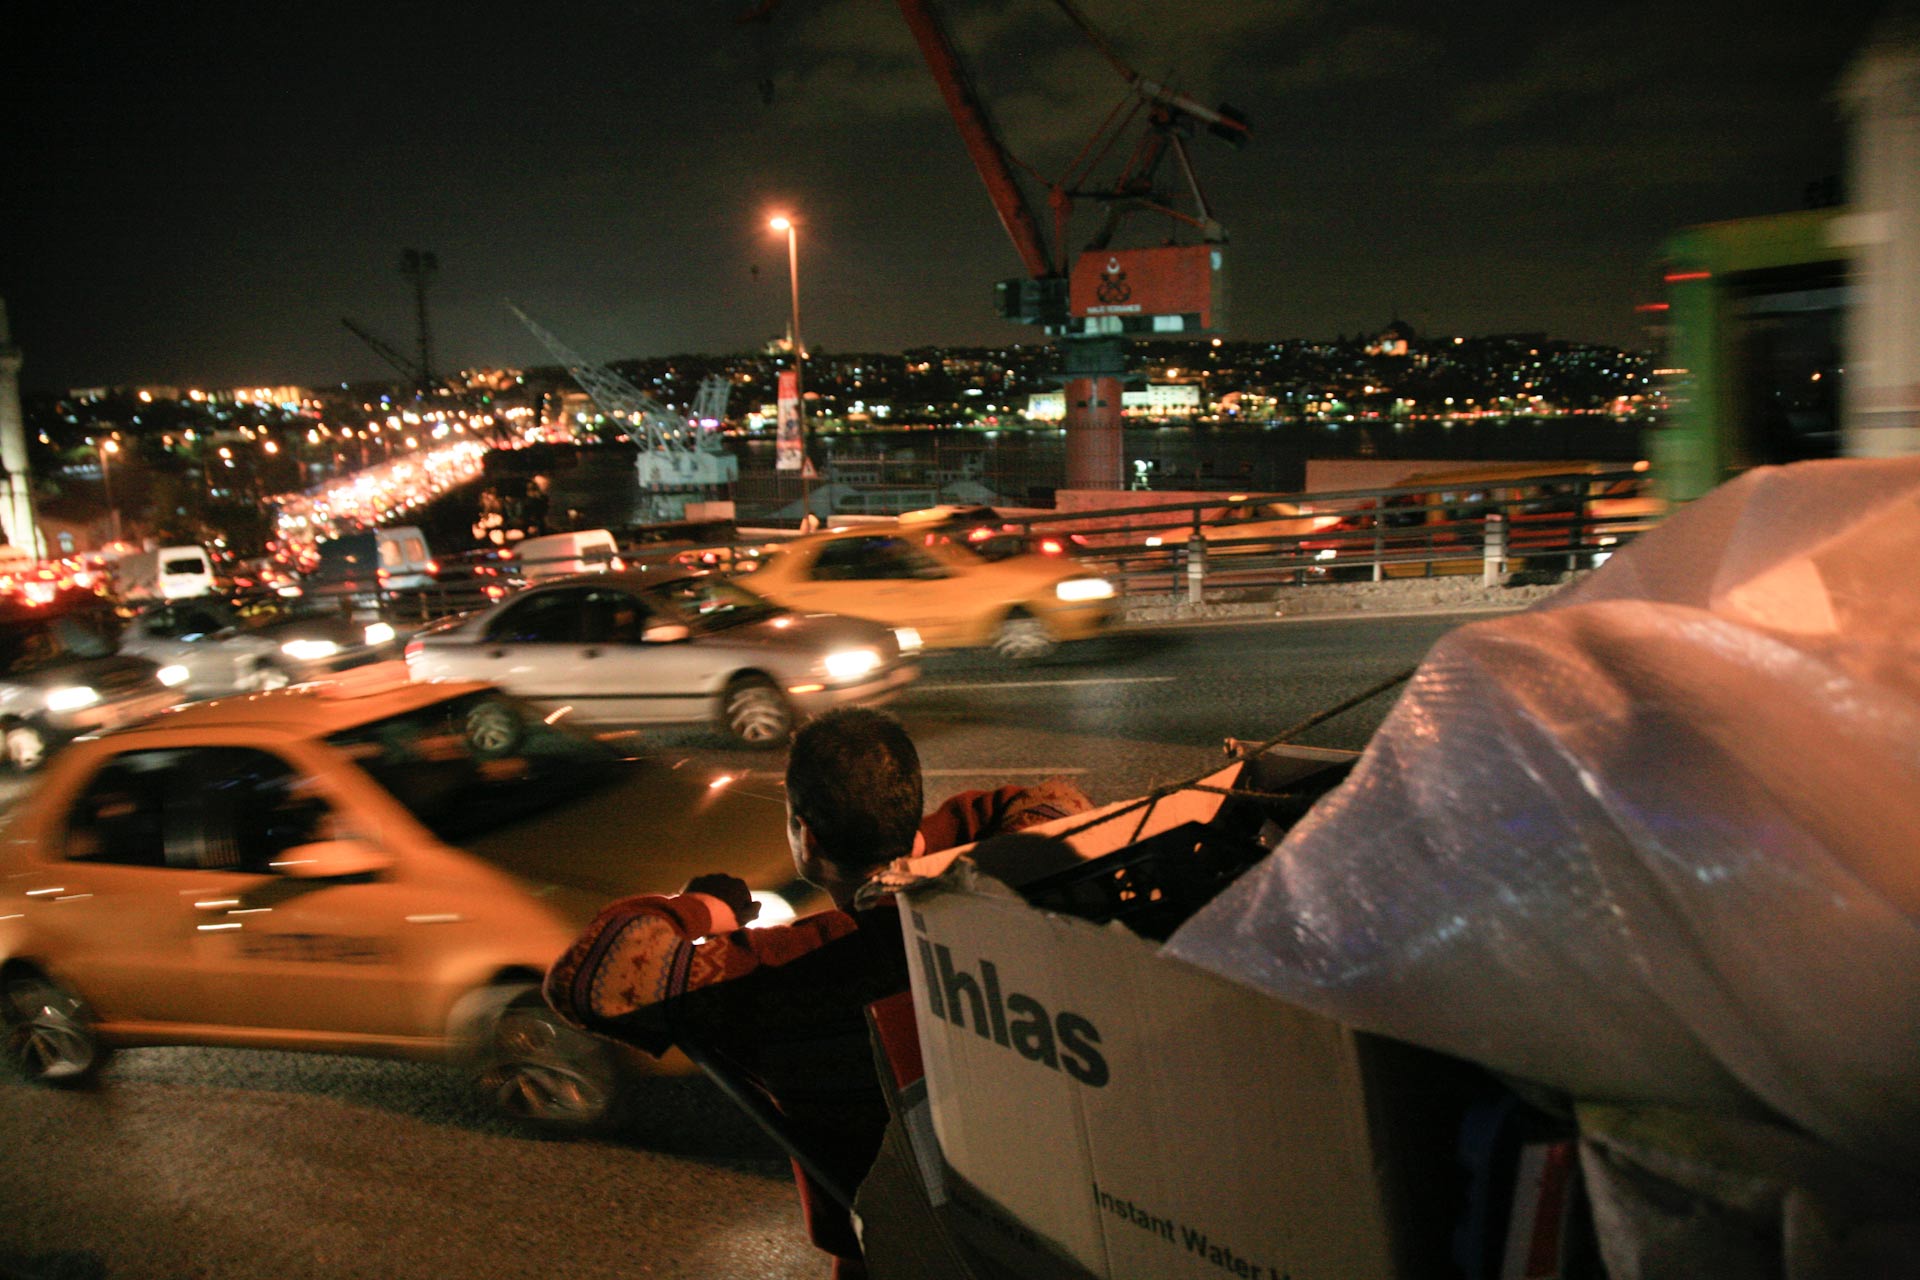 Waste piker tries to make his way through the havy evening traffic in Şişhane, Beyoğlu